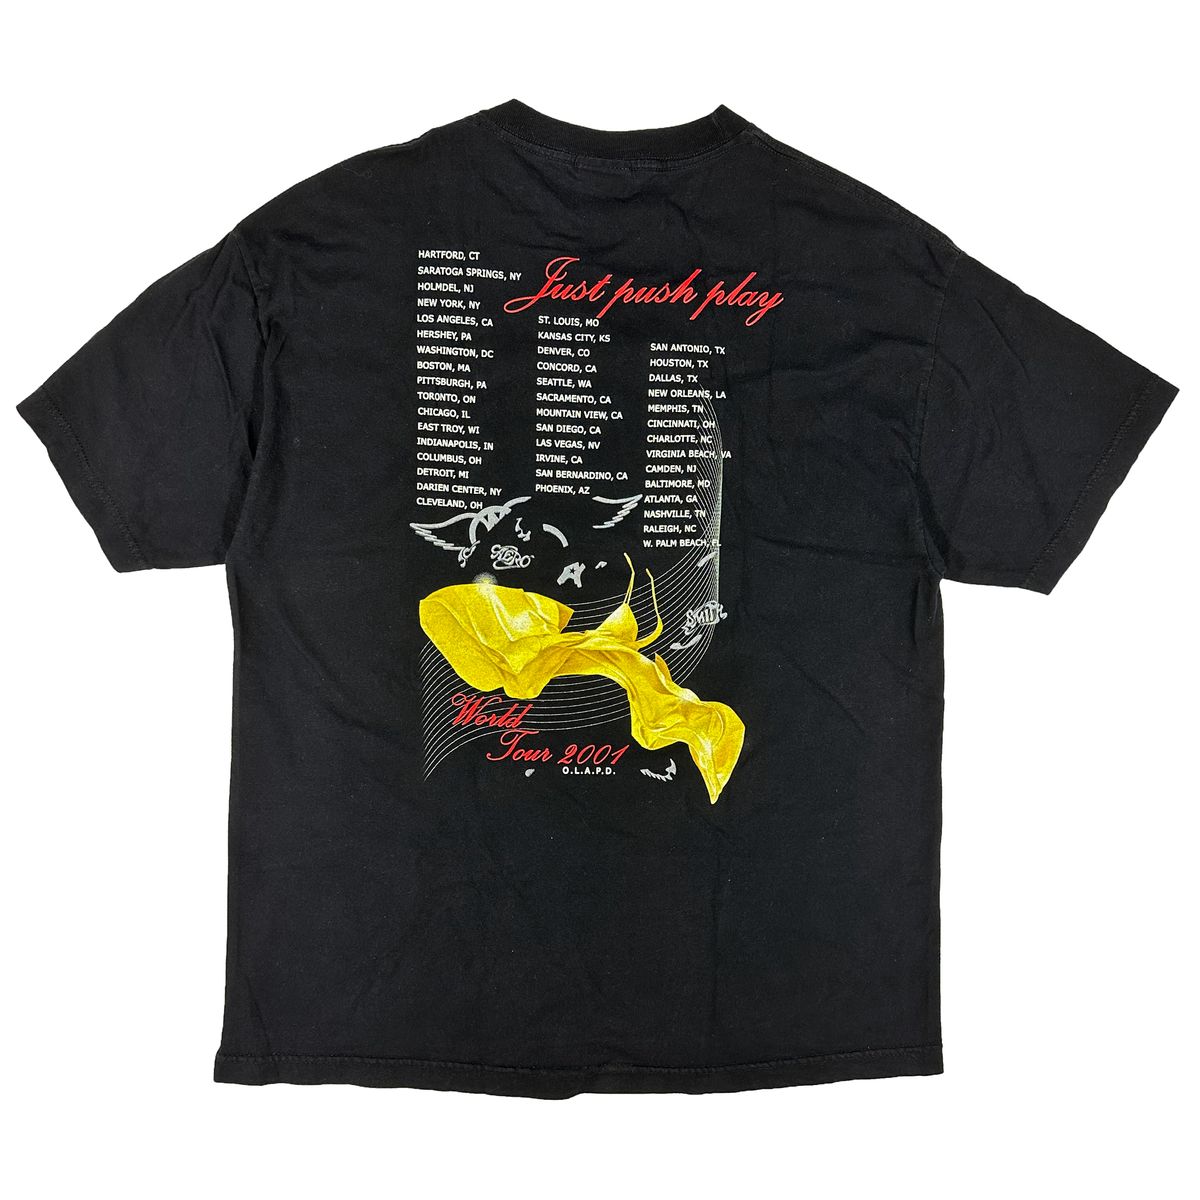 着丈約78cmAEROSMITH JUST PUSH PLAY TOUR 2001 Tシャツ